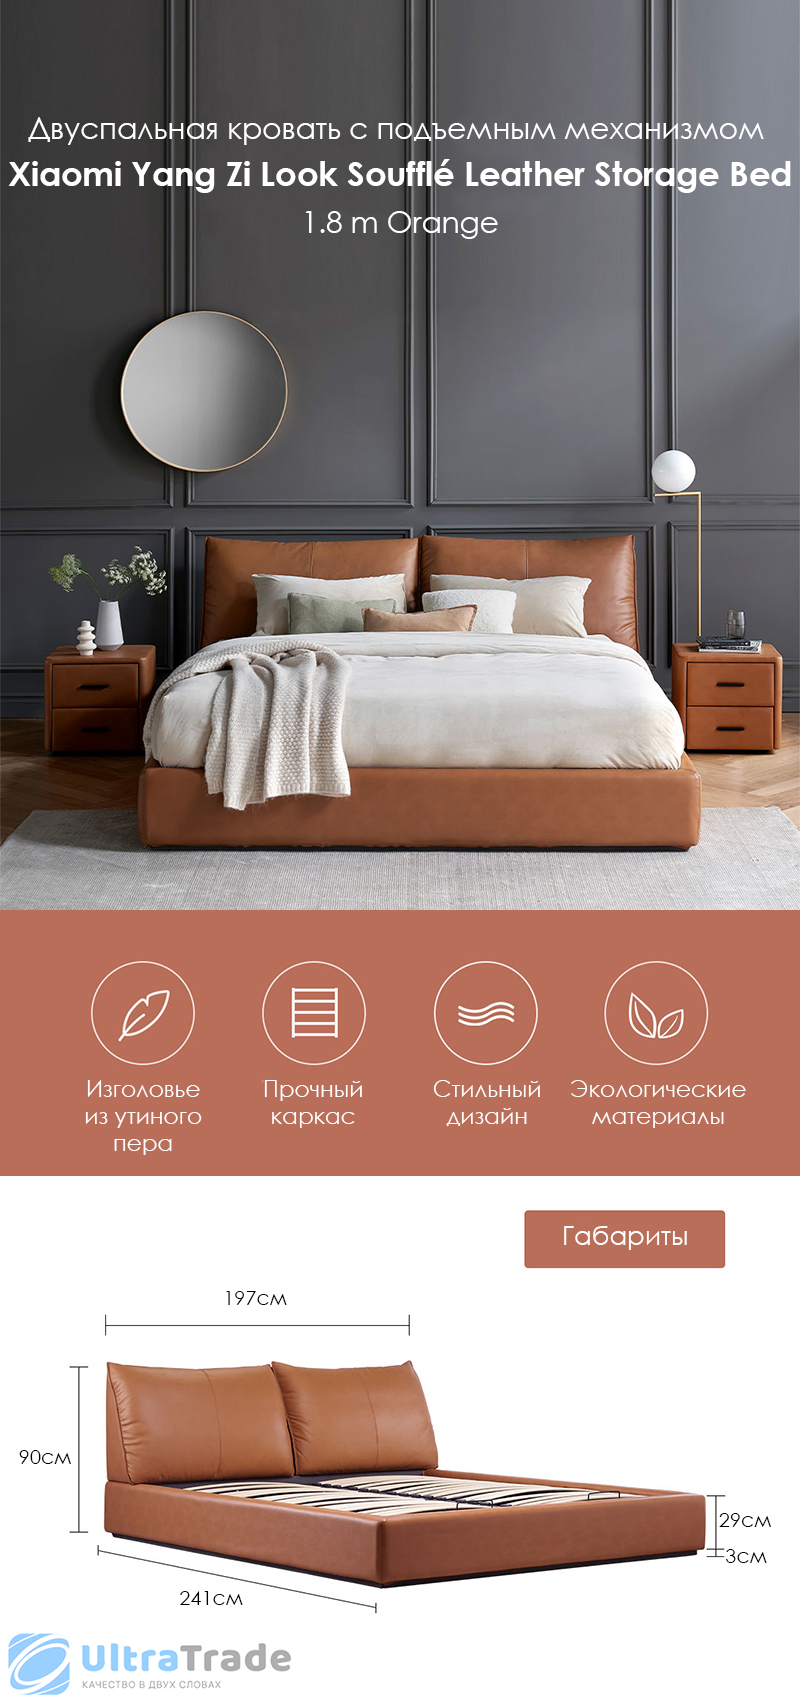 Двуспальная кровать с подъемным механизмом Xiaomi Yang Zi Look Soufflé Leather Storage Bed 1.8 m Orange